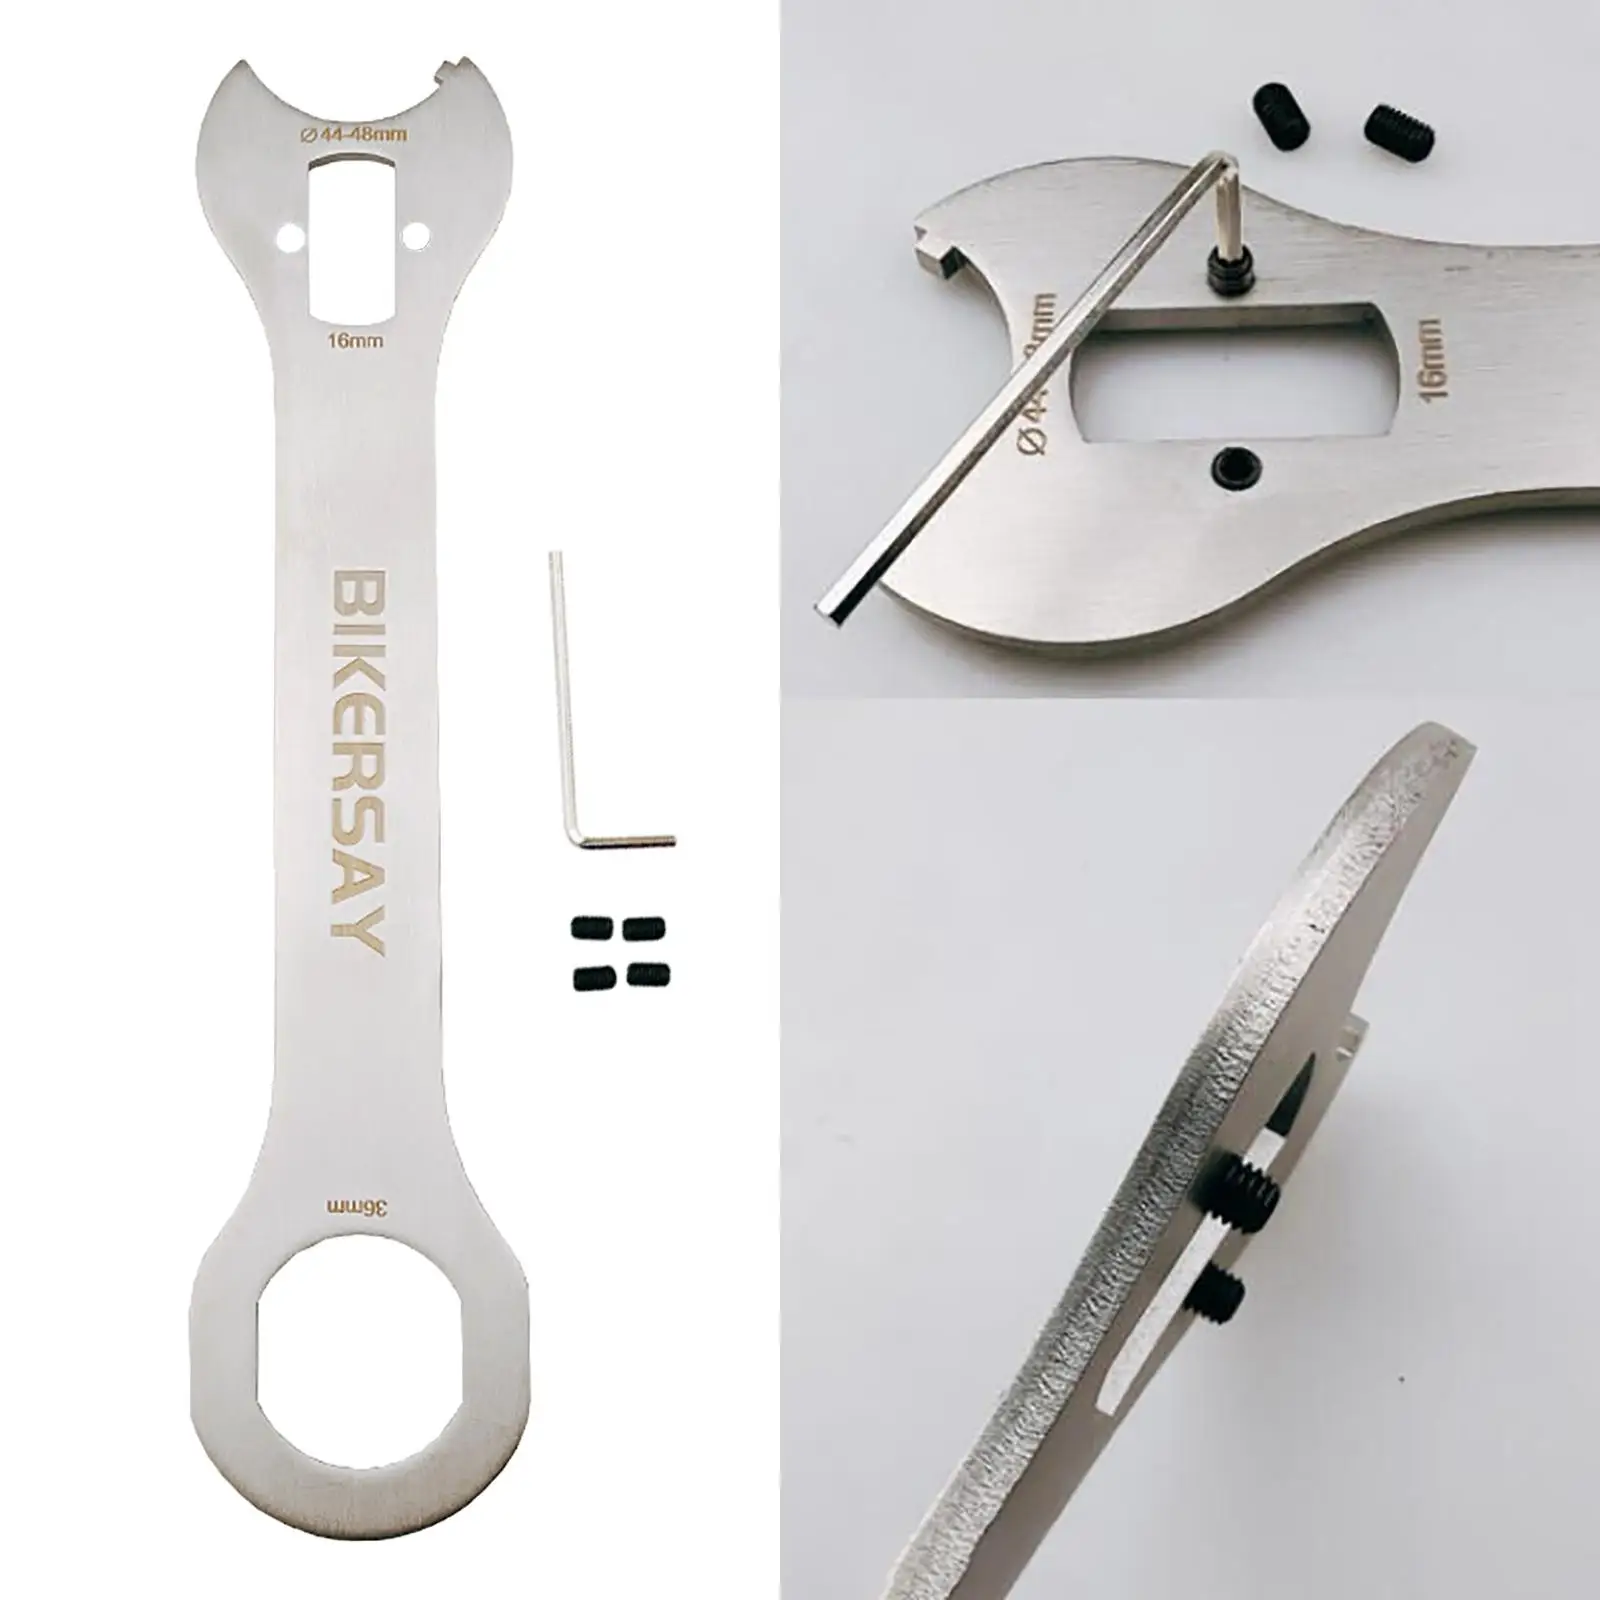 

Универсальный гаечный ключ 36 мм 16 мм с открытым концом, многофункциональный инструмент для ремонта стен, серебристый